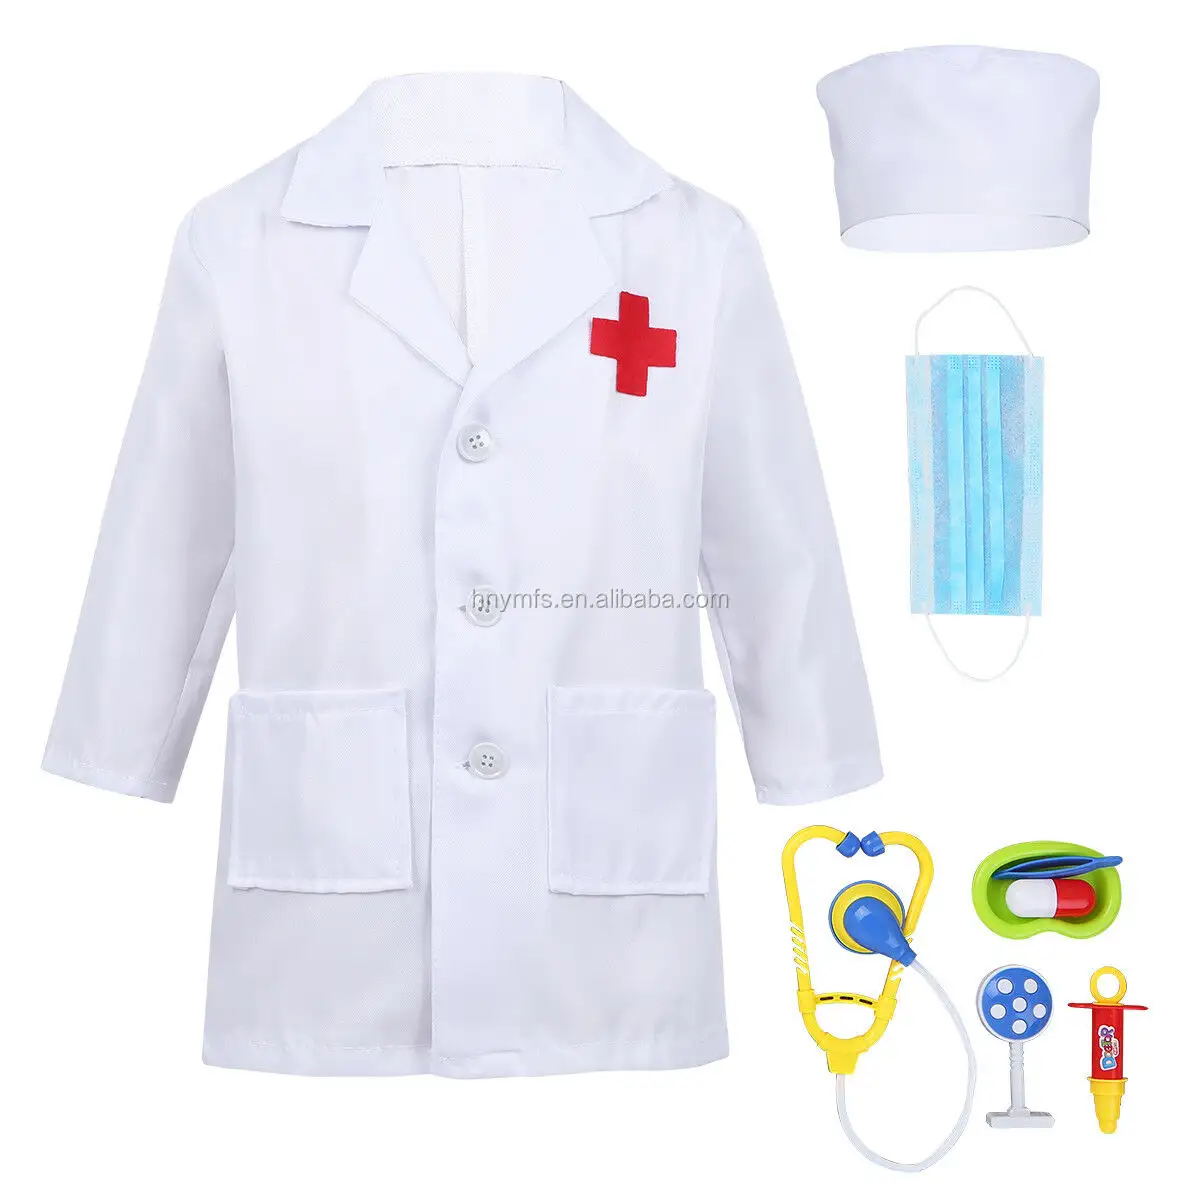 ชุดฮาโลวีนชุดสีขาวชุดพยาบาลแพทย์เครื่องแต่งกายเด็ก